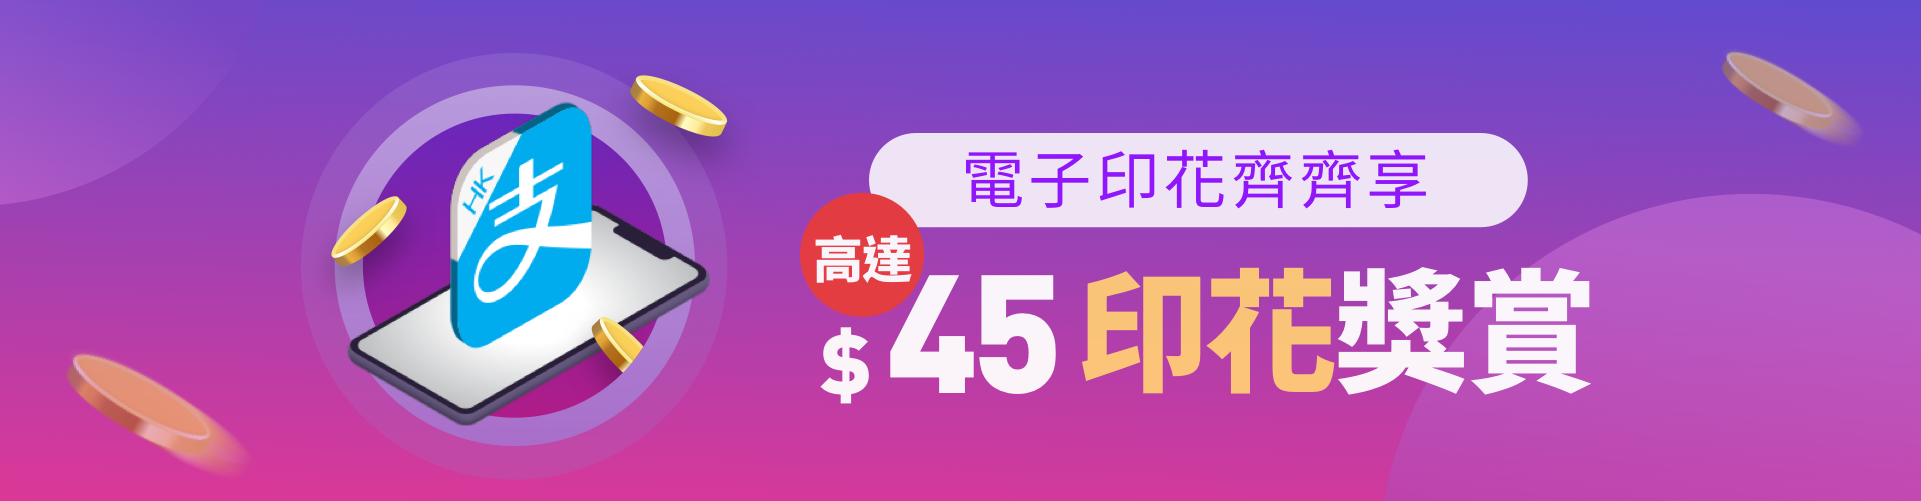 輕鬆儲 印花 賺取高達$45 AlipayHK 支付寶 香港 獎賞